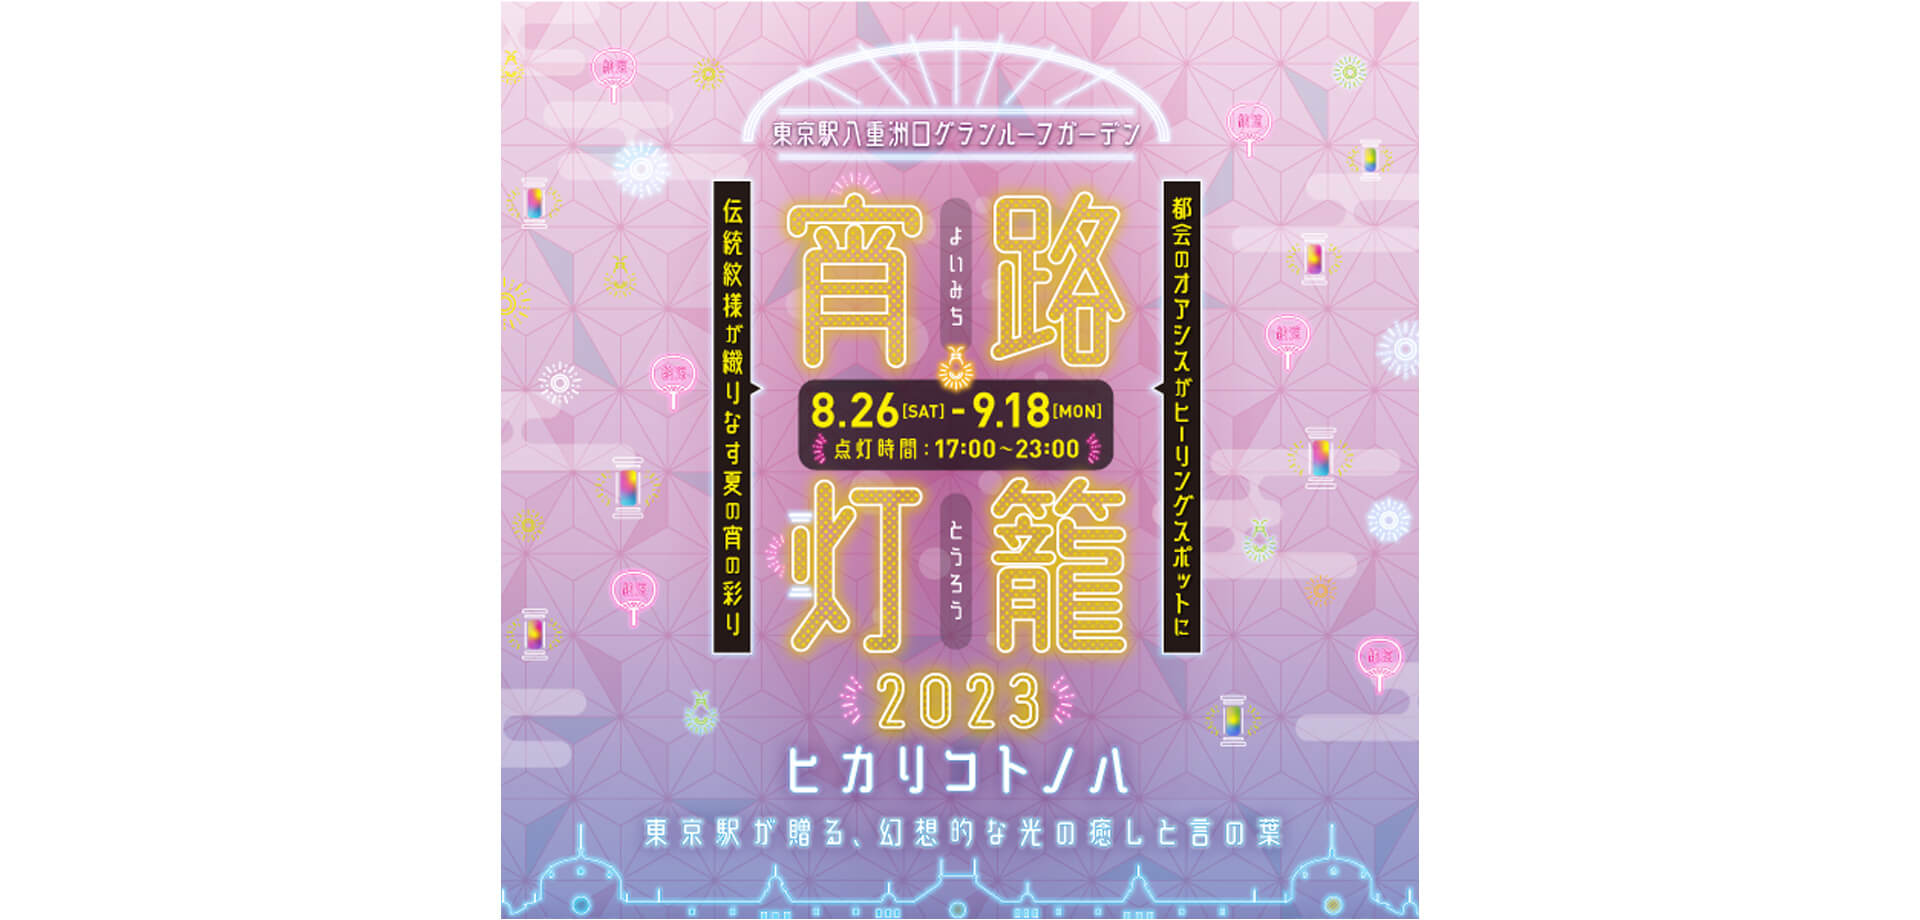 グランルーフガーデン 宵路灯籠(よいみちとうろう)2023 東京駅